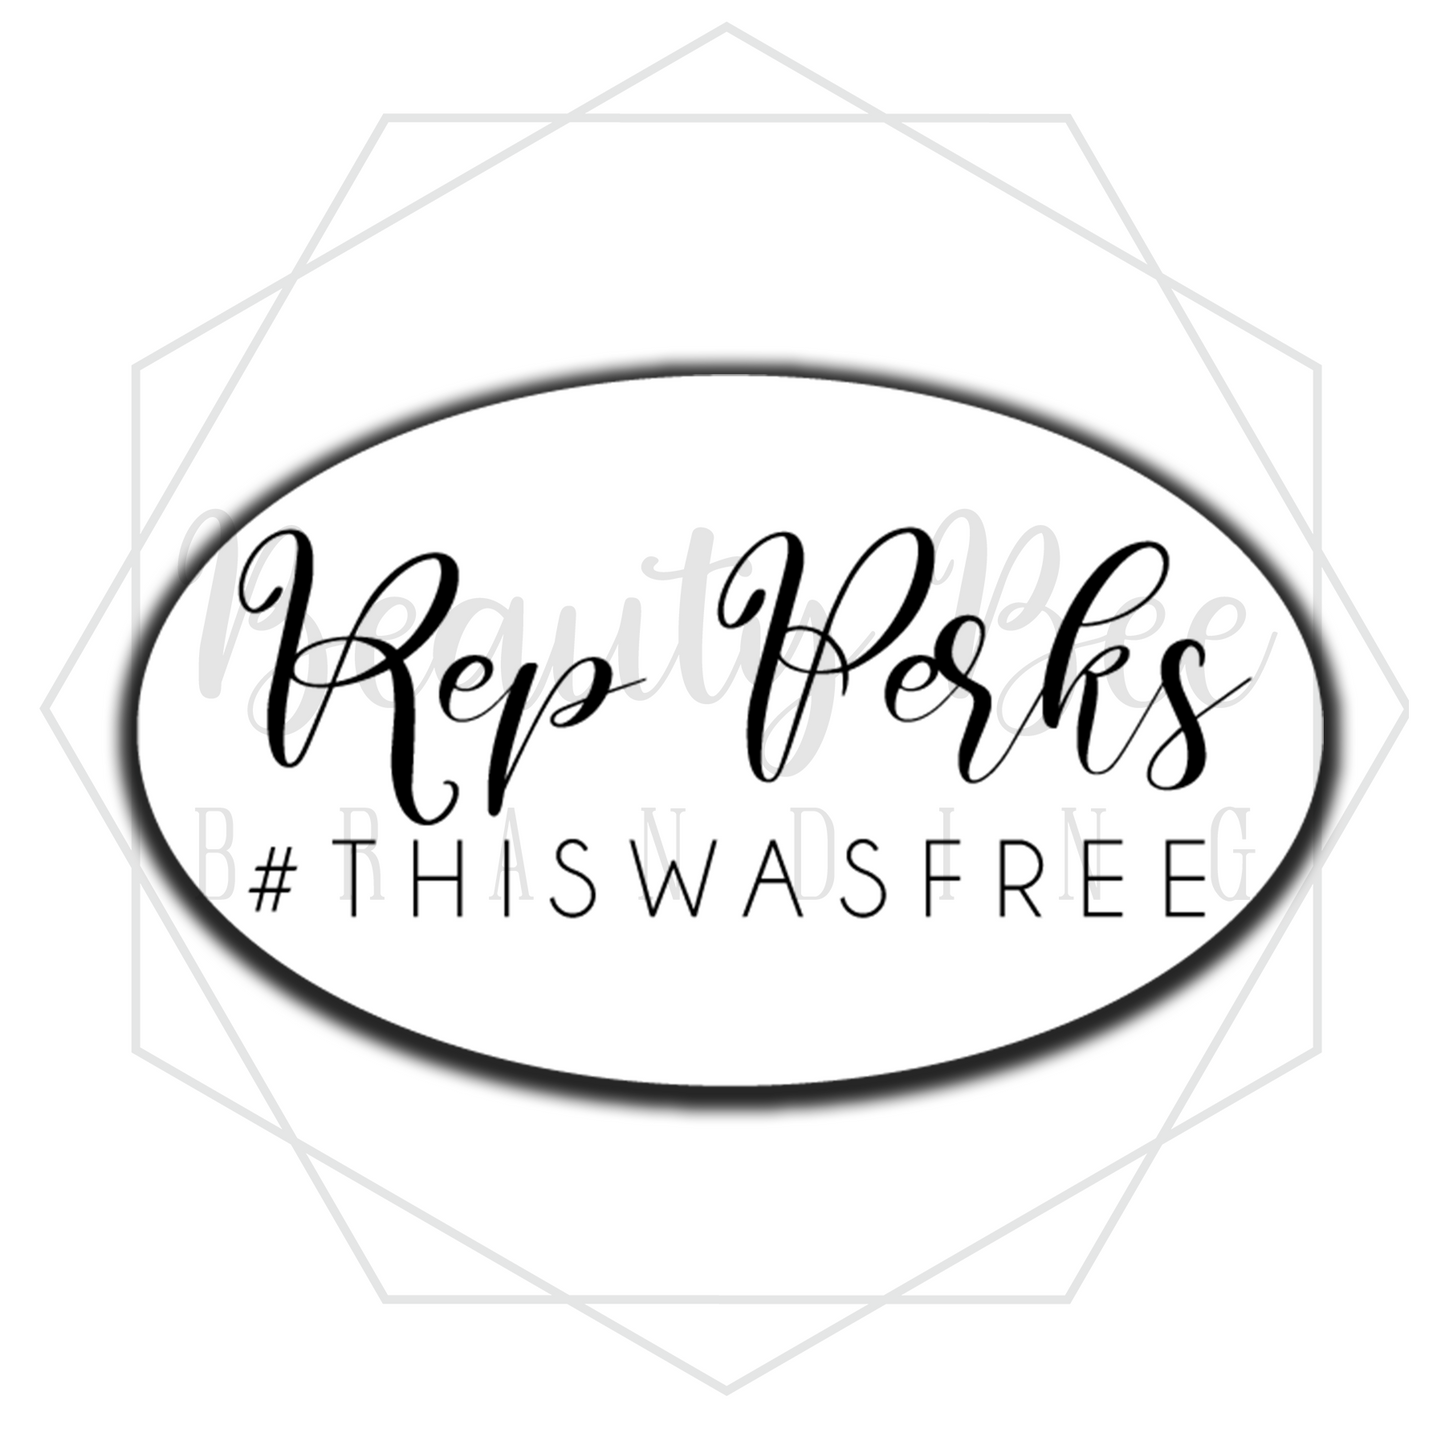 Rep Perks #ThisWasFree Sticker Sheet